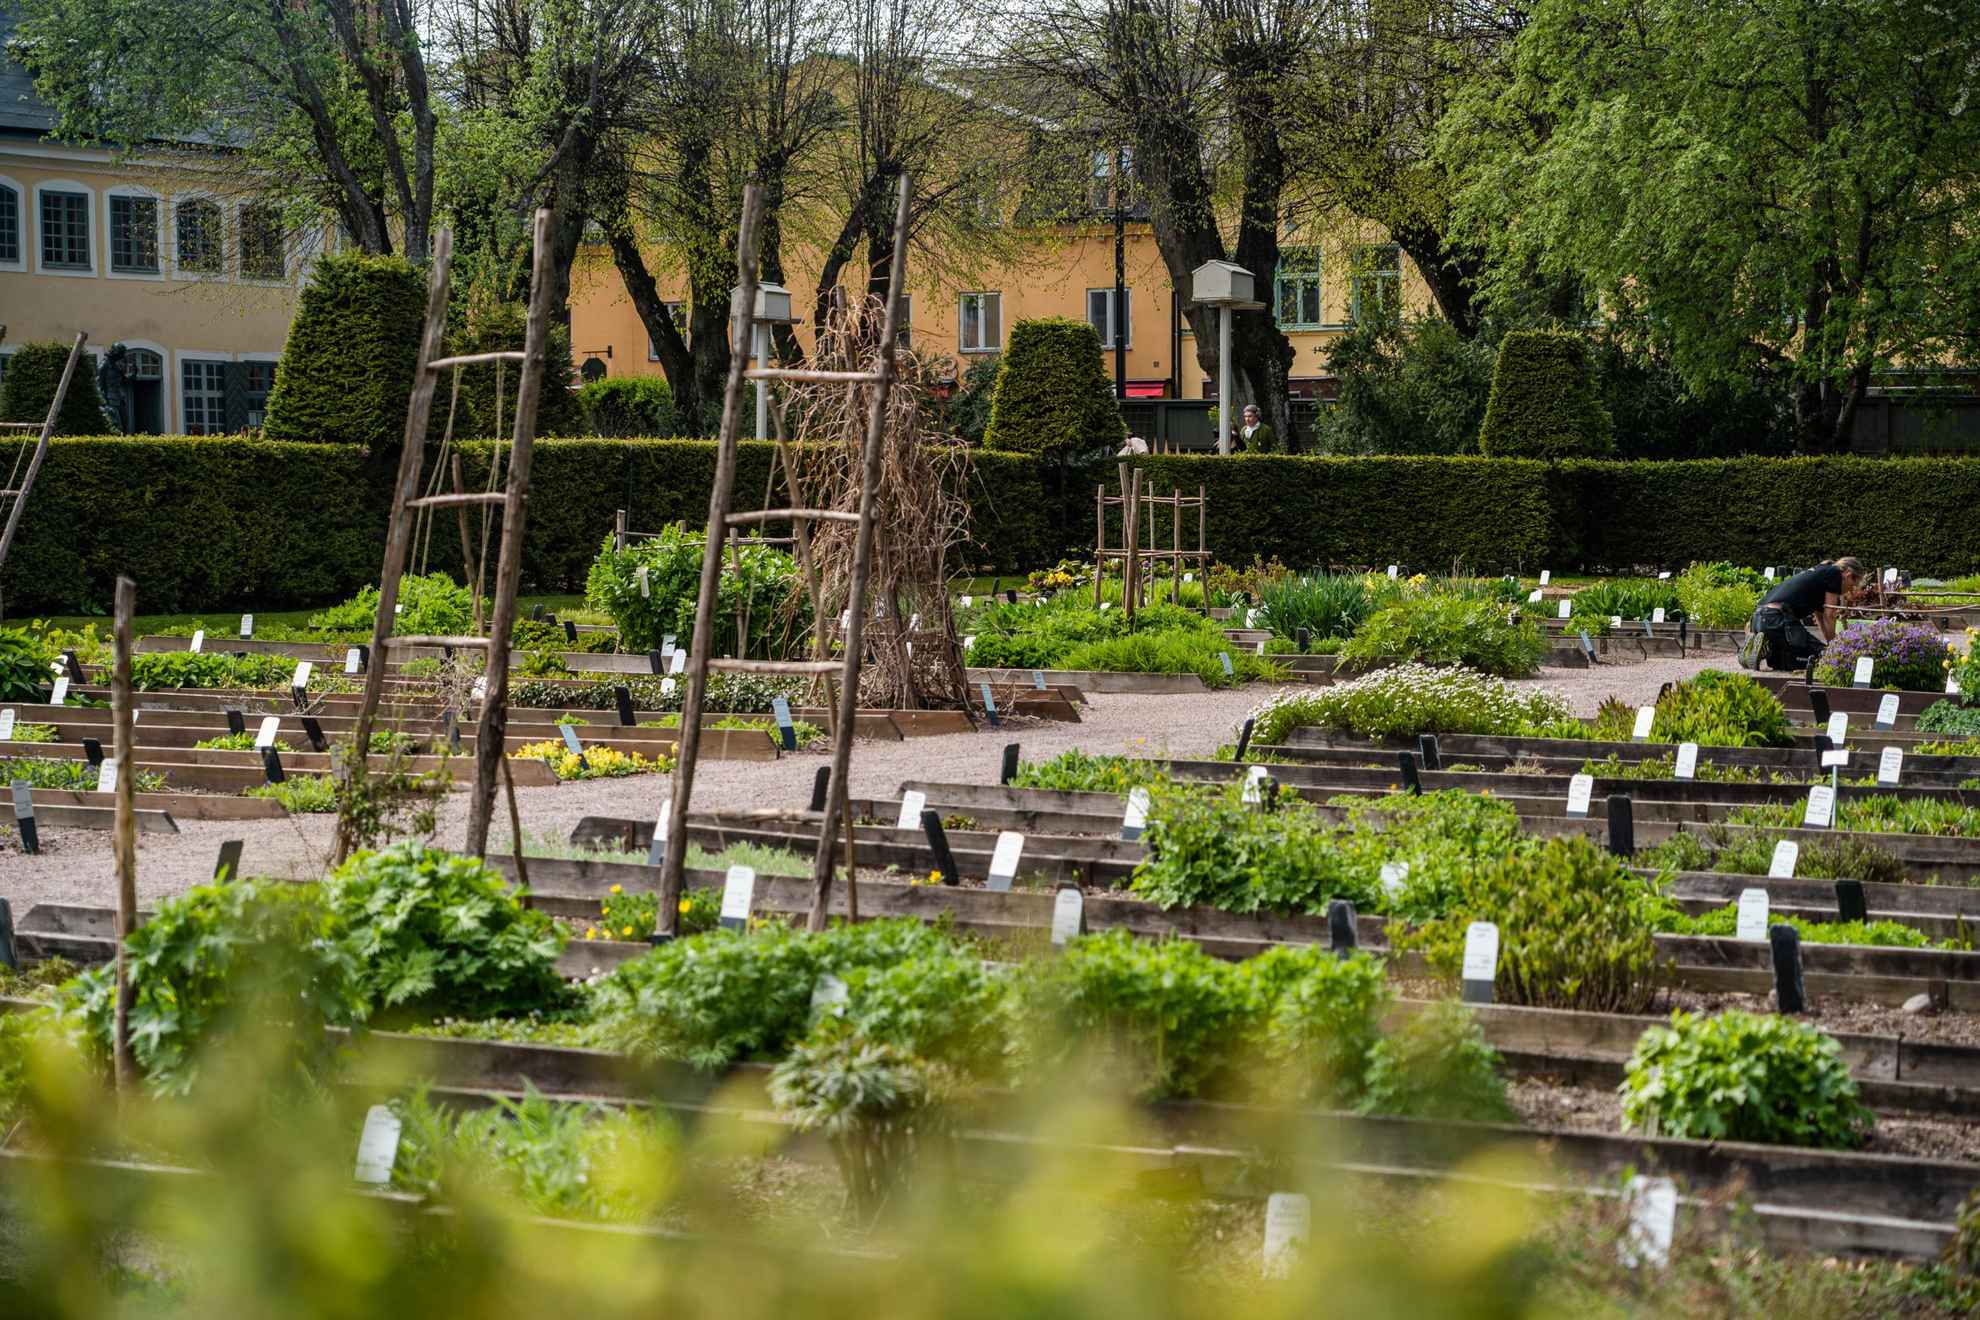 Cultivations at the Linnaeus Garden